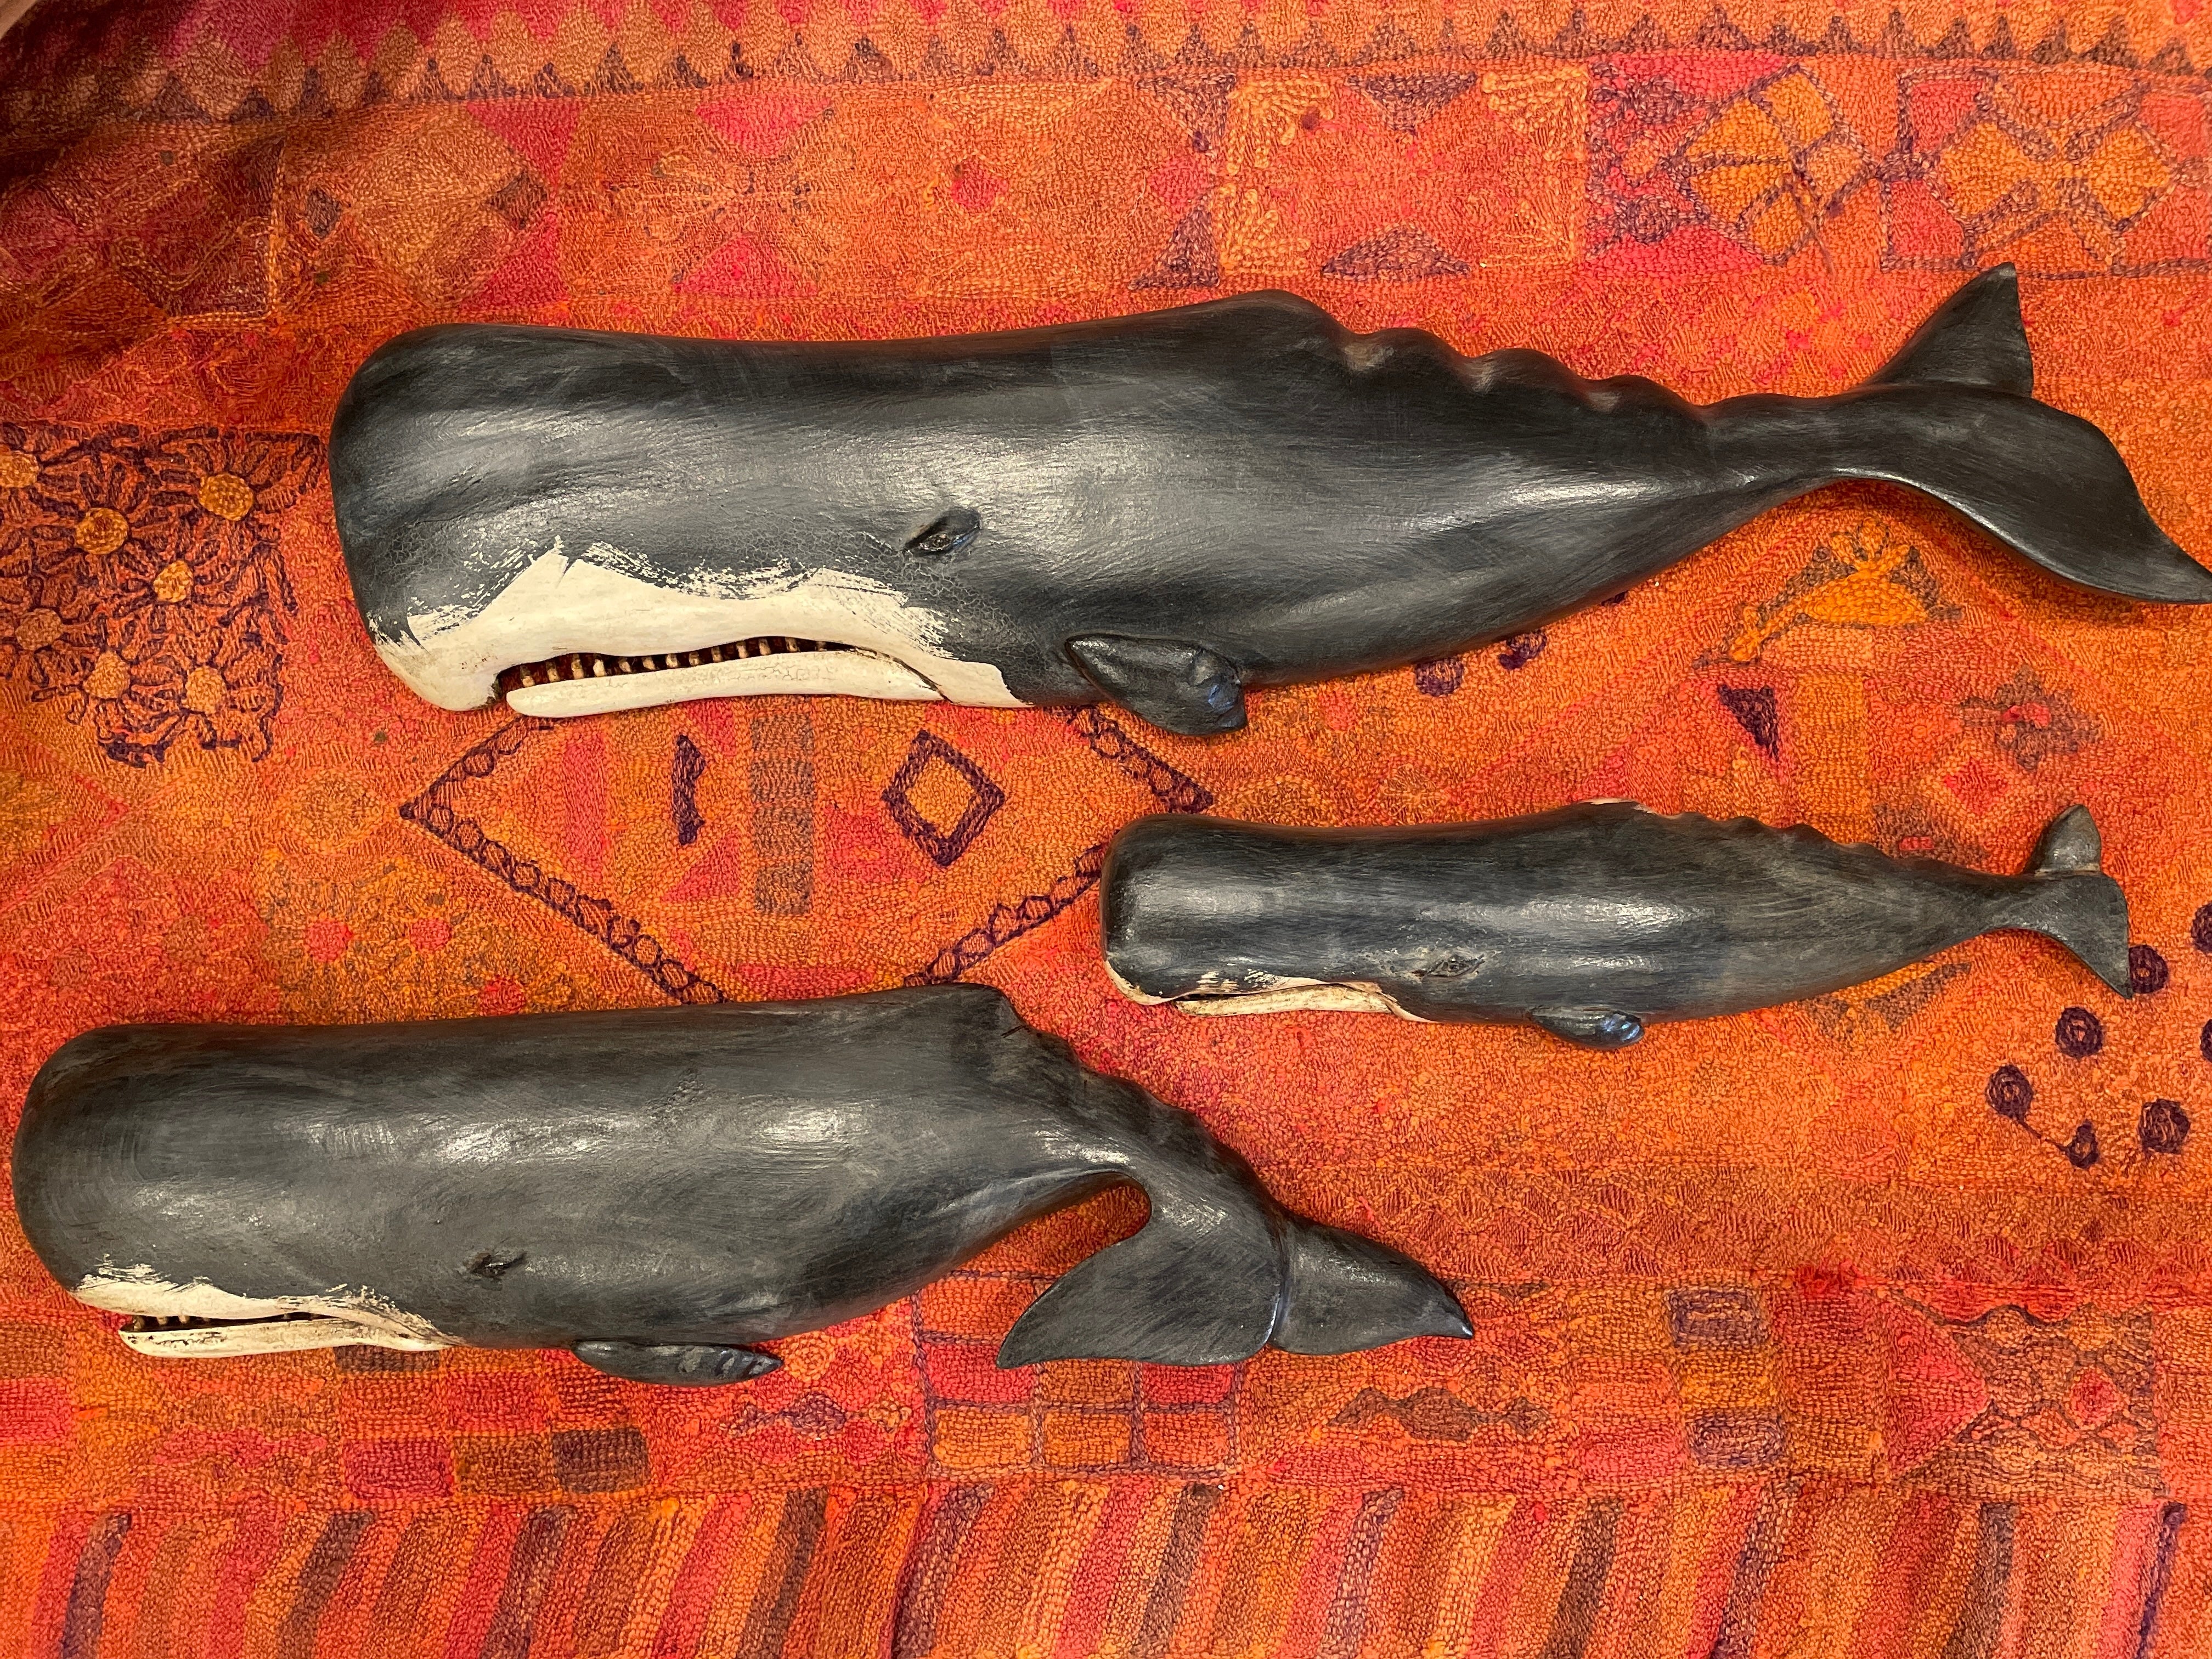 Sperm Whale Plaque (dark)